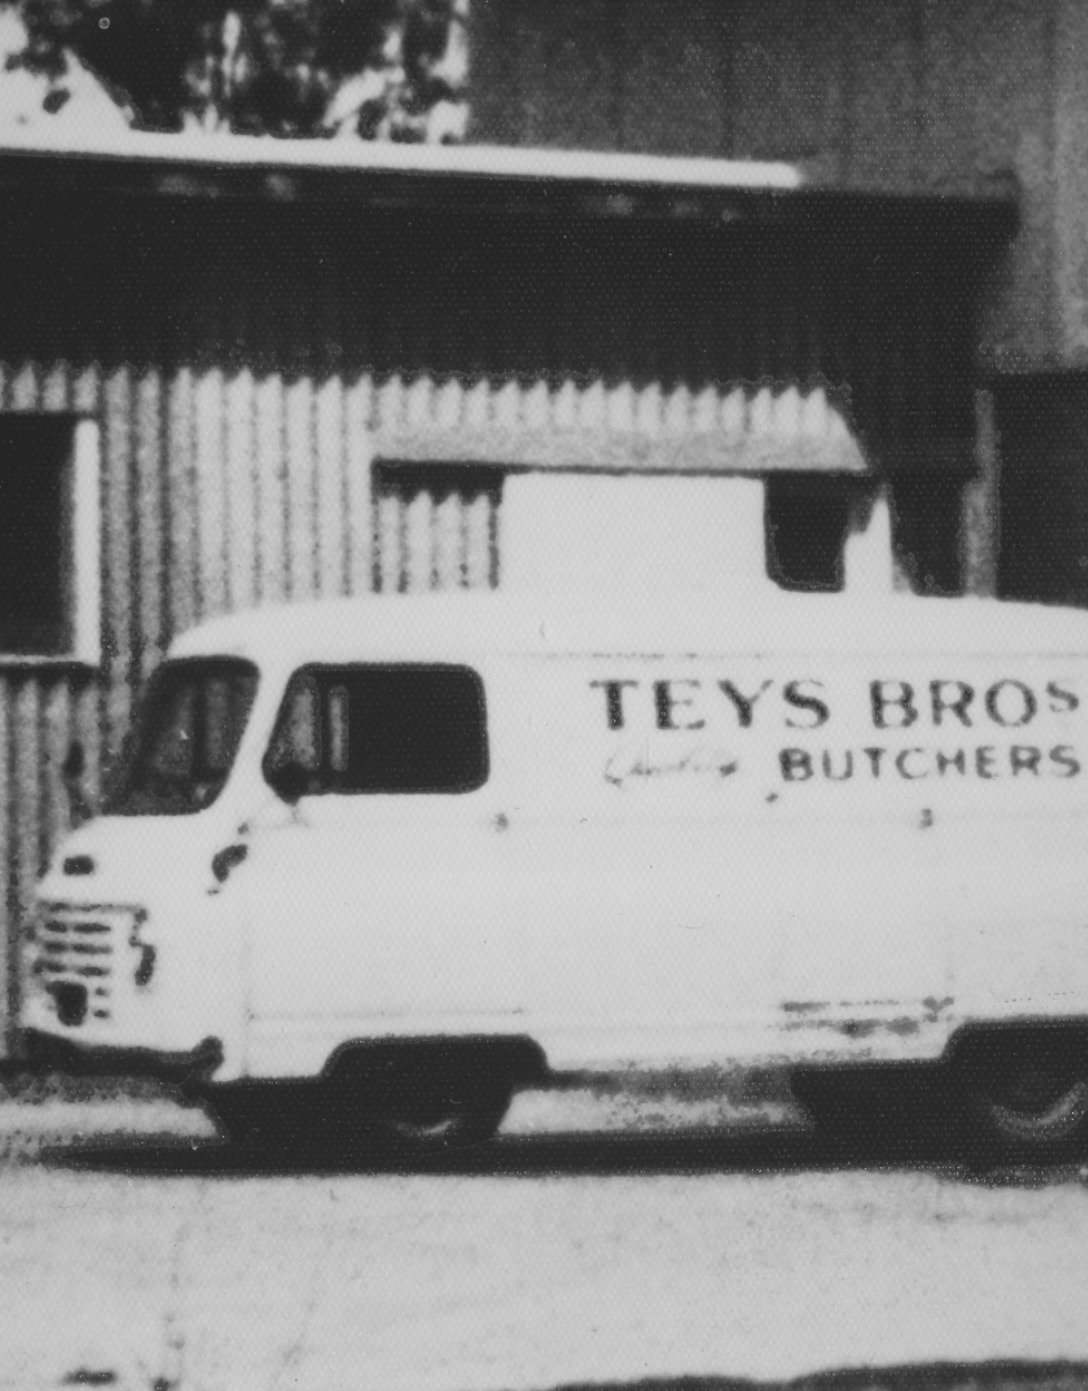 Teys的肉店历史